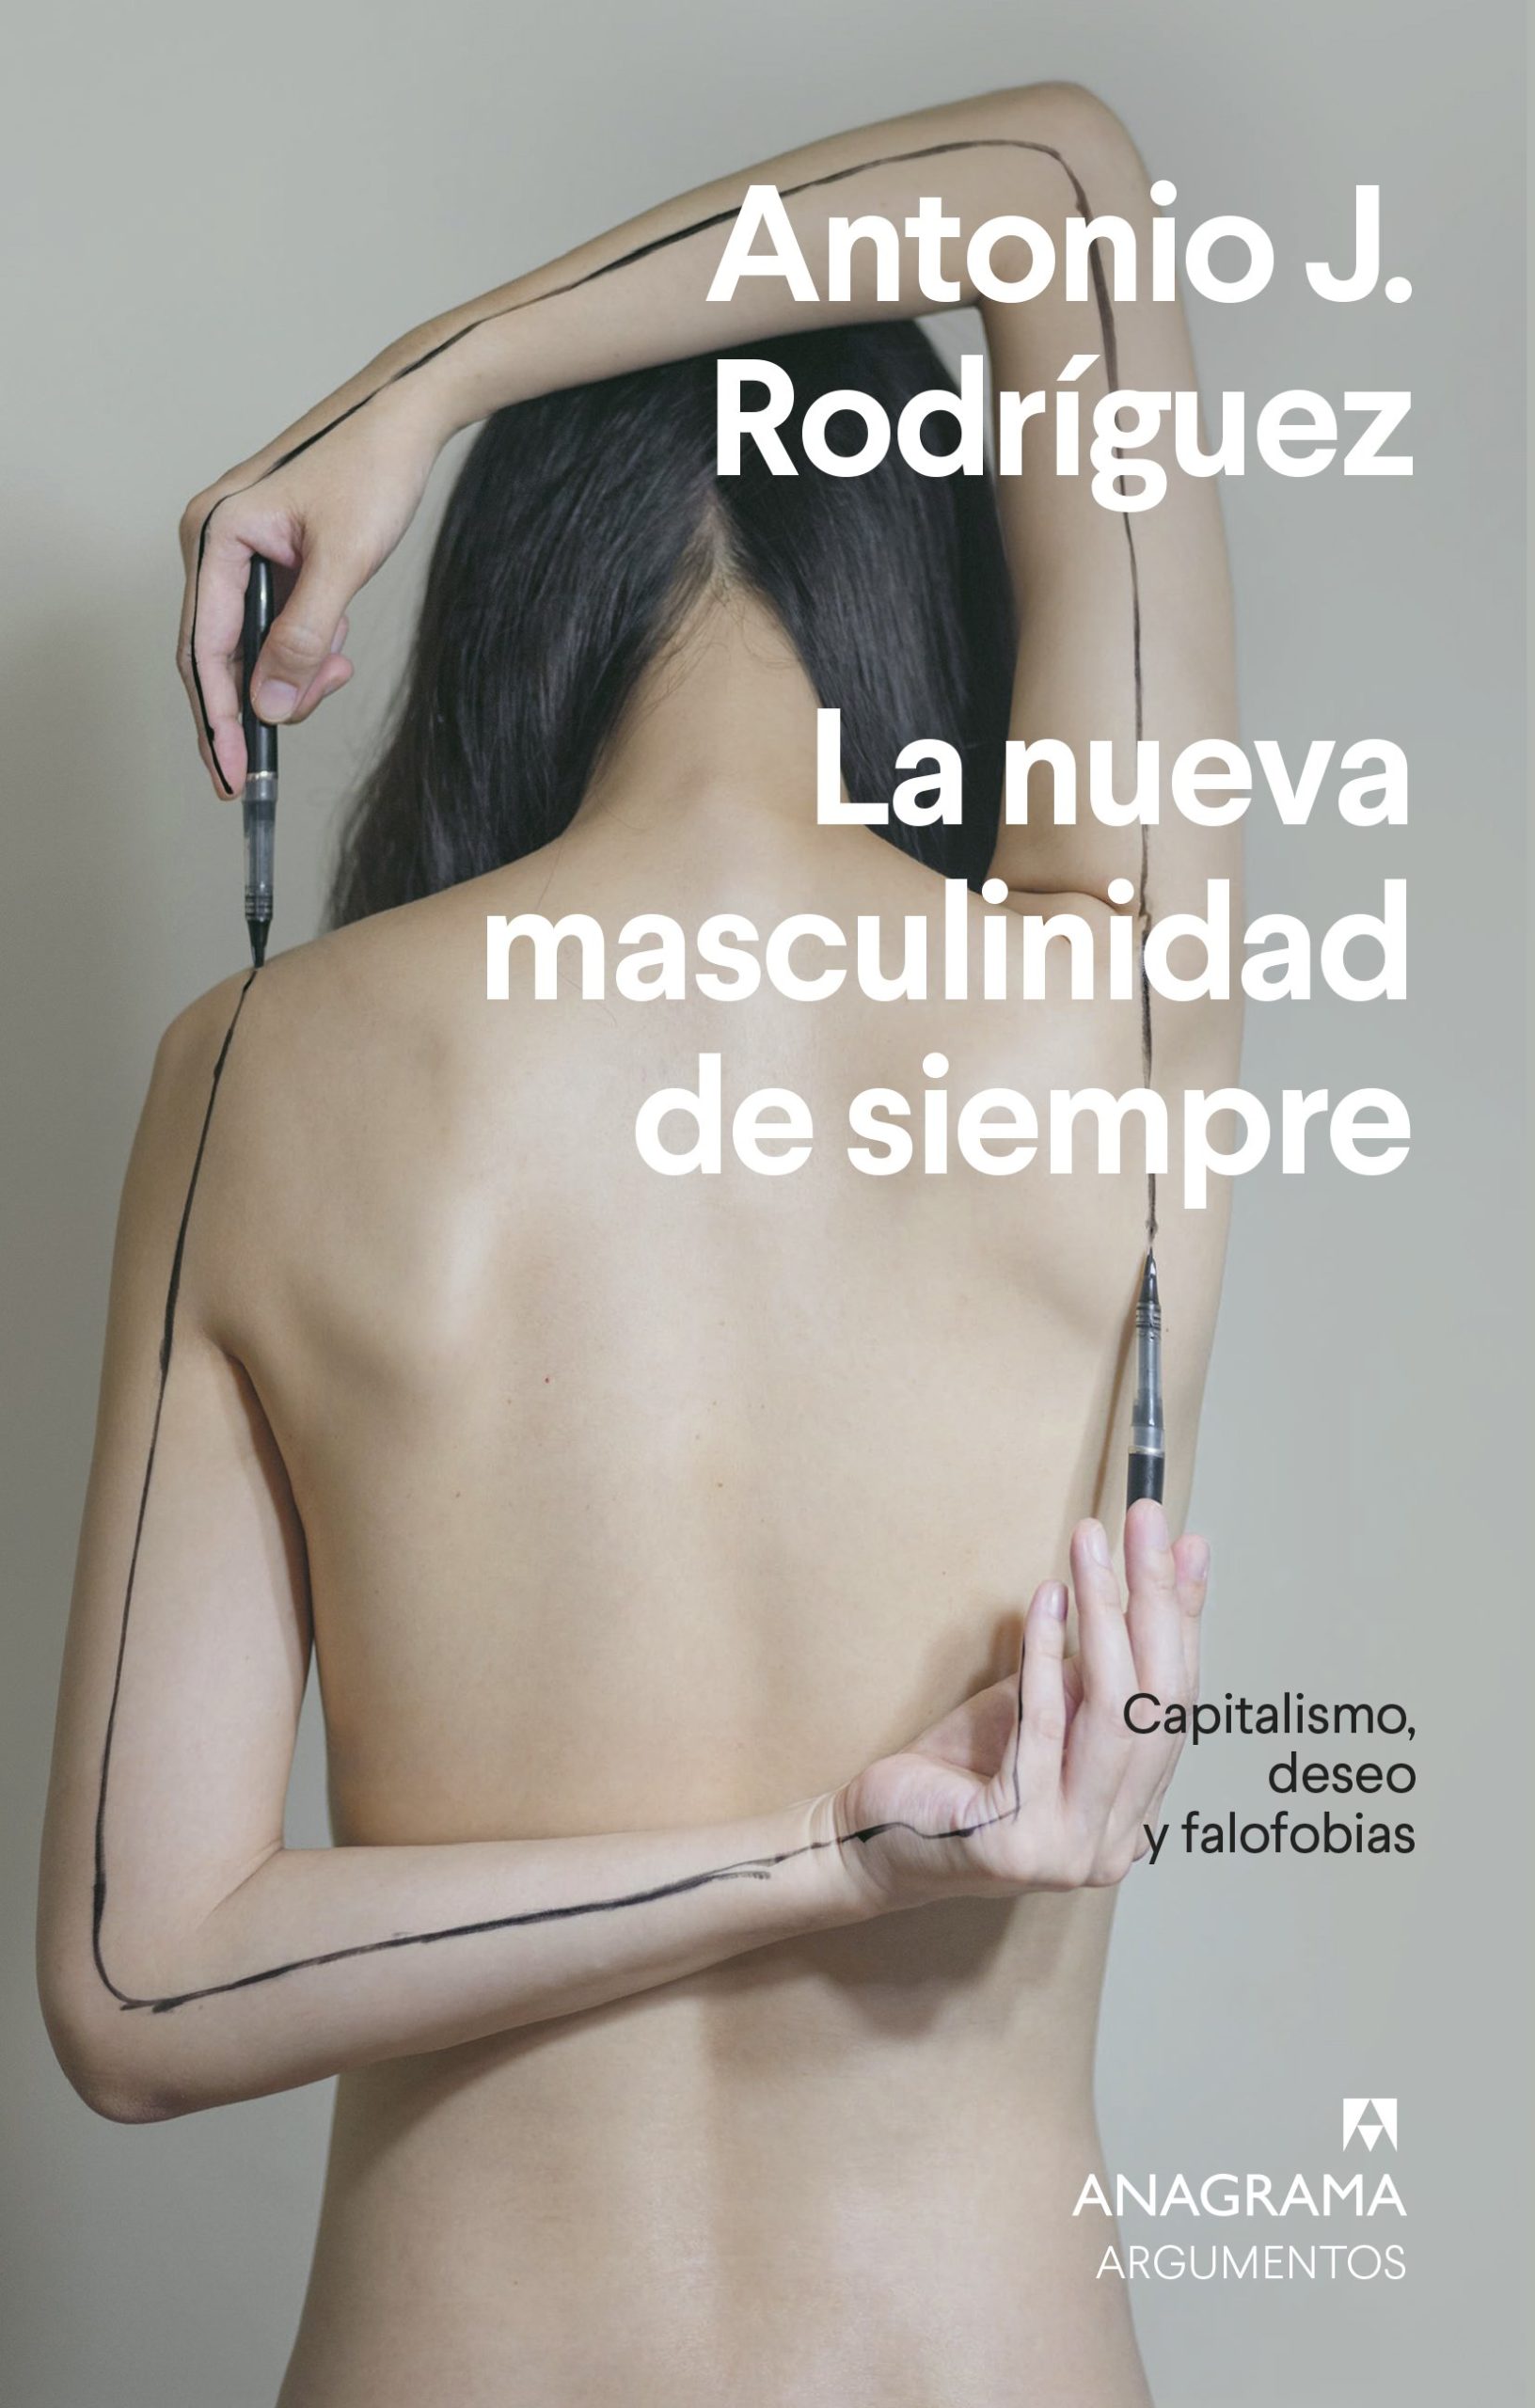 Antonio J. Rodríguez: “La heterosexualidad es un sistema de control de cuerpo de la mujer”